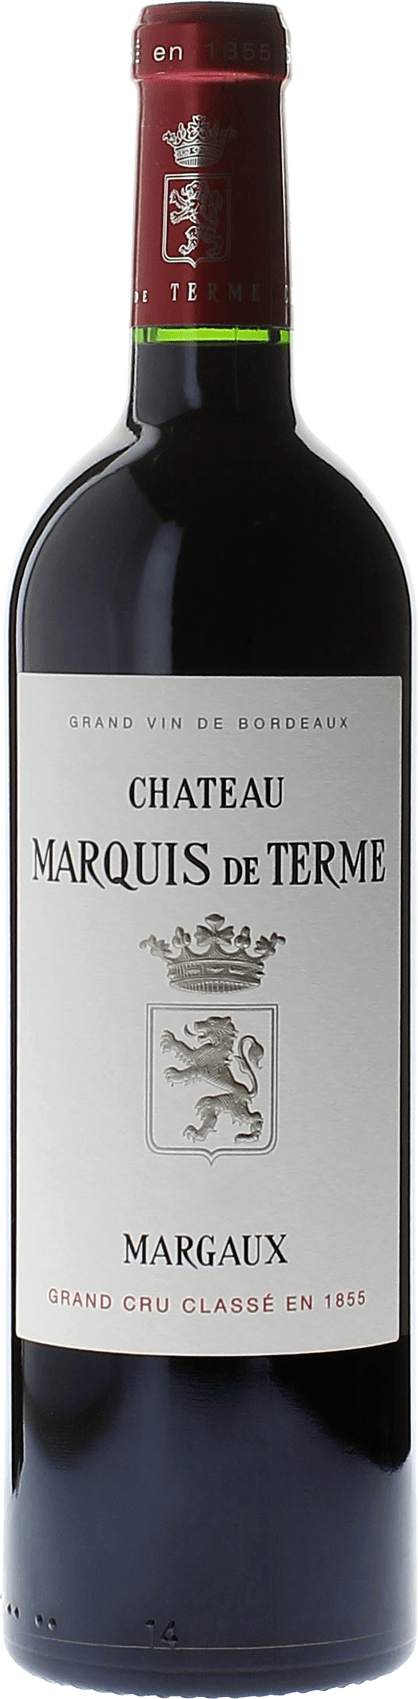 Marquis de terme 2019 4me Grand cru class Margaux, Bordeaux rouge